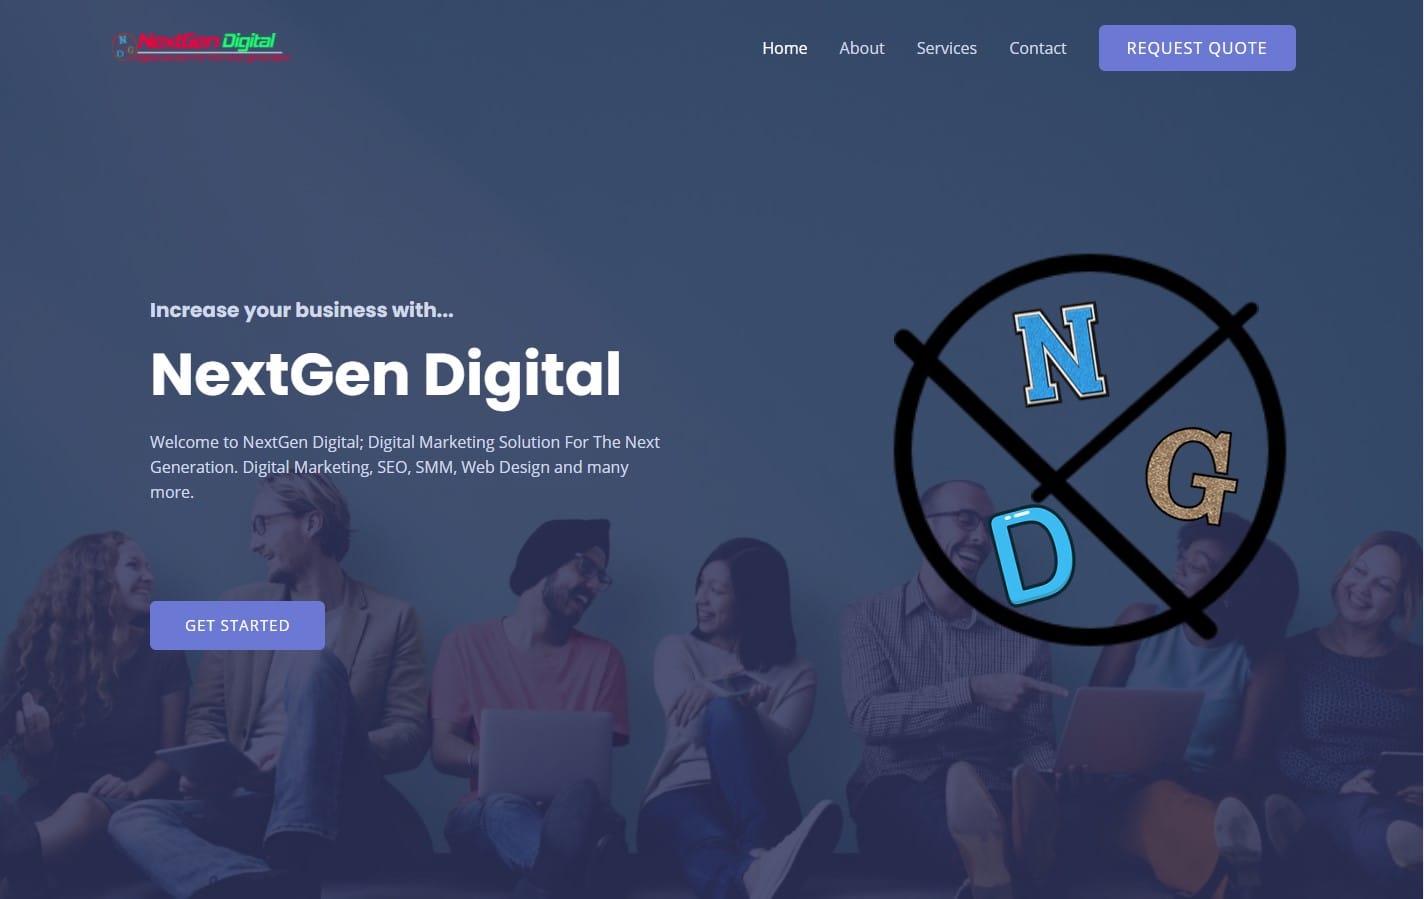 NextGen Digital; Digital Solution For The Next Generation